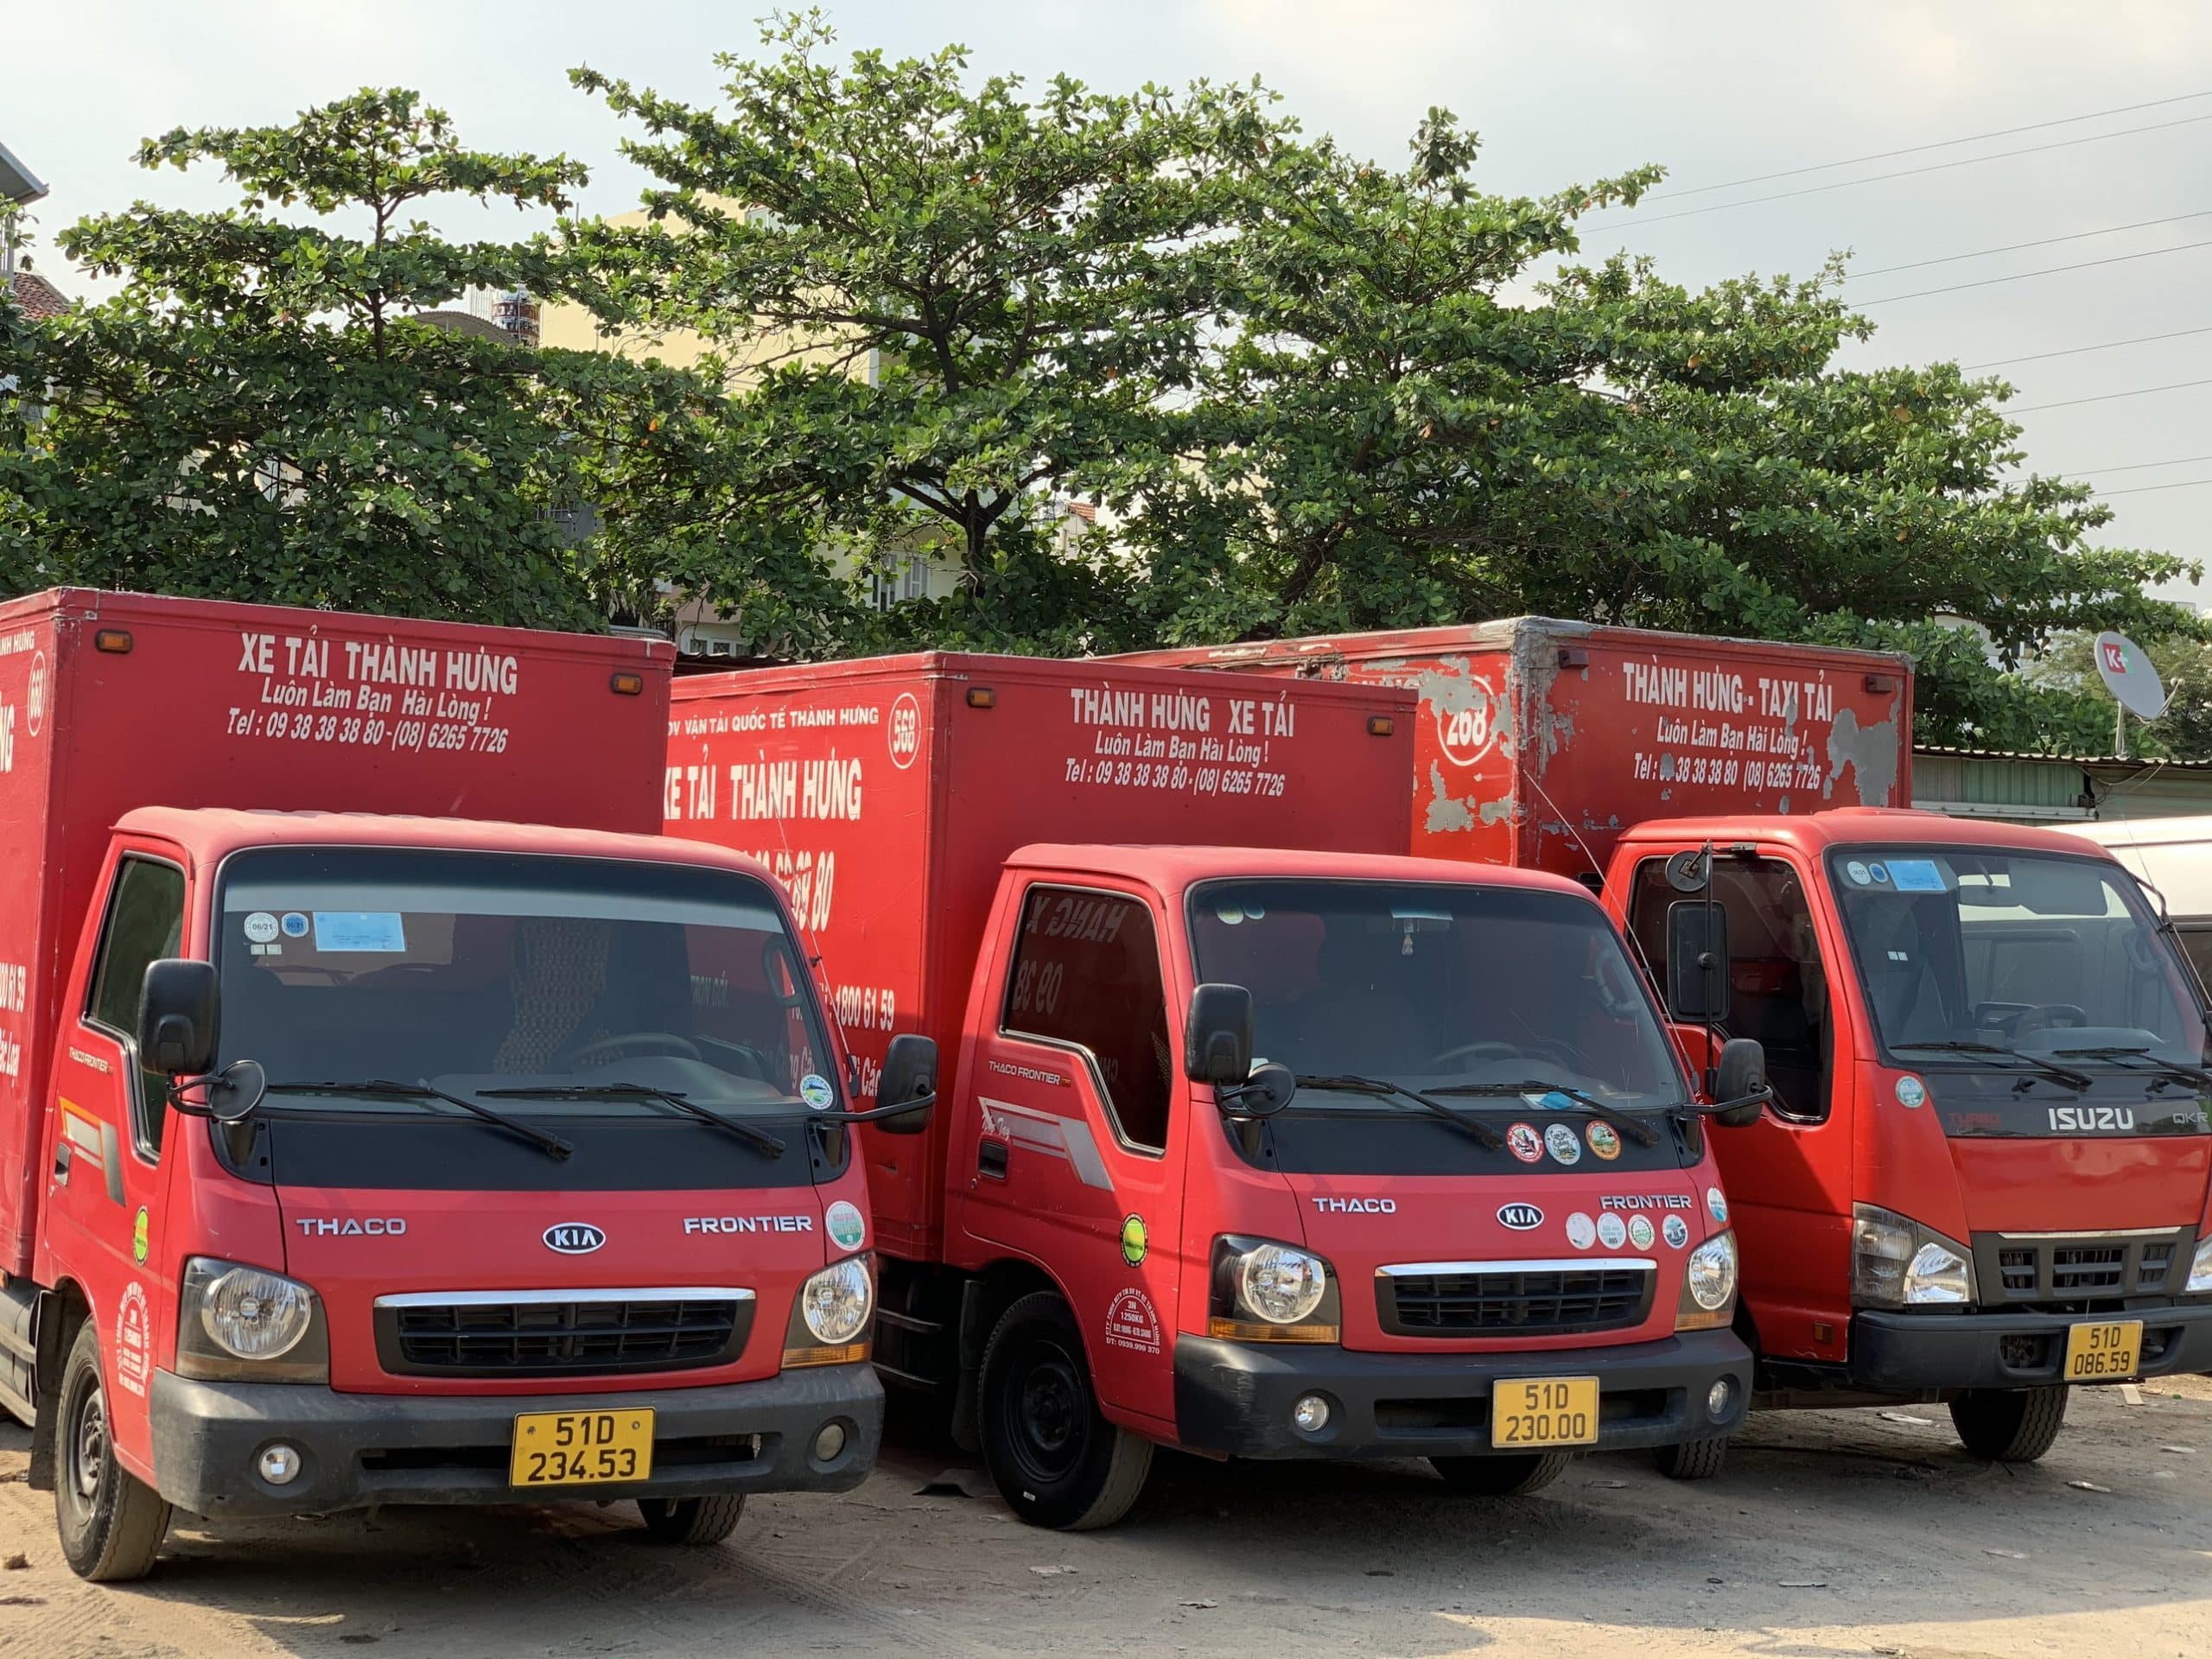 Taxi Tải Thành Hưng cung cấp dịch vụ chuyển kho xưởng uy tín